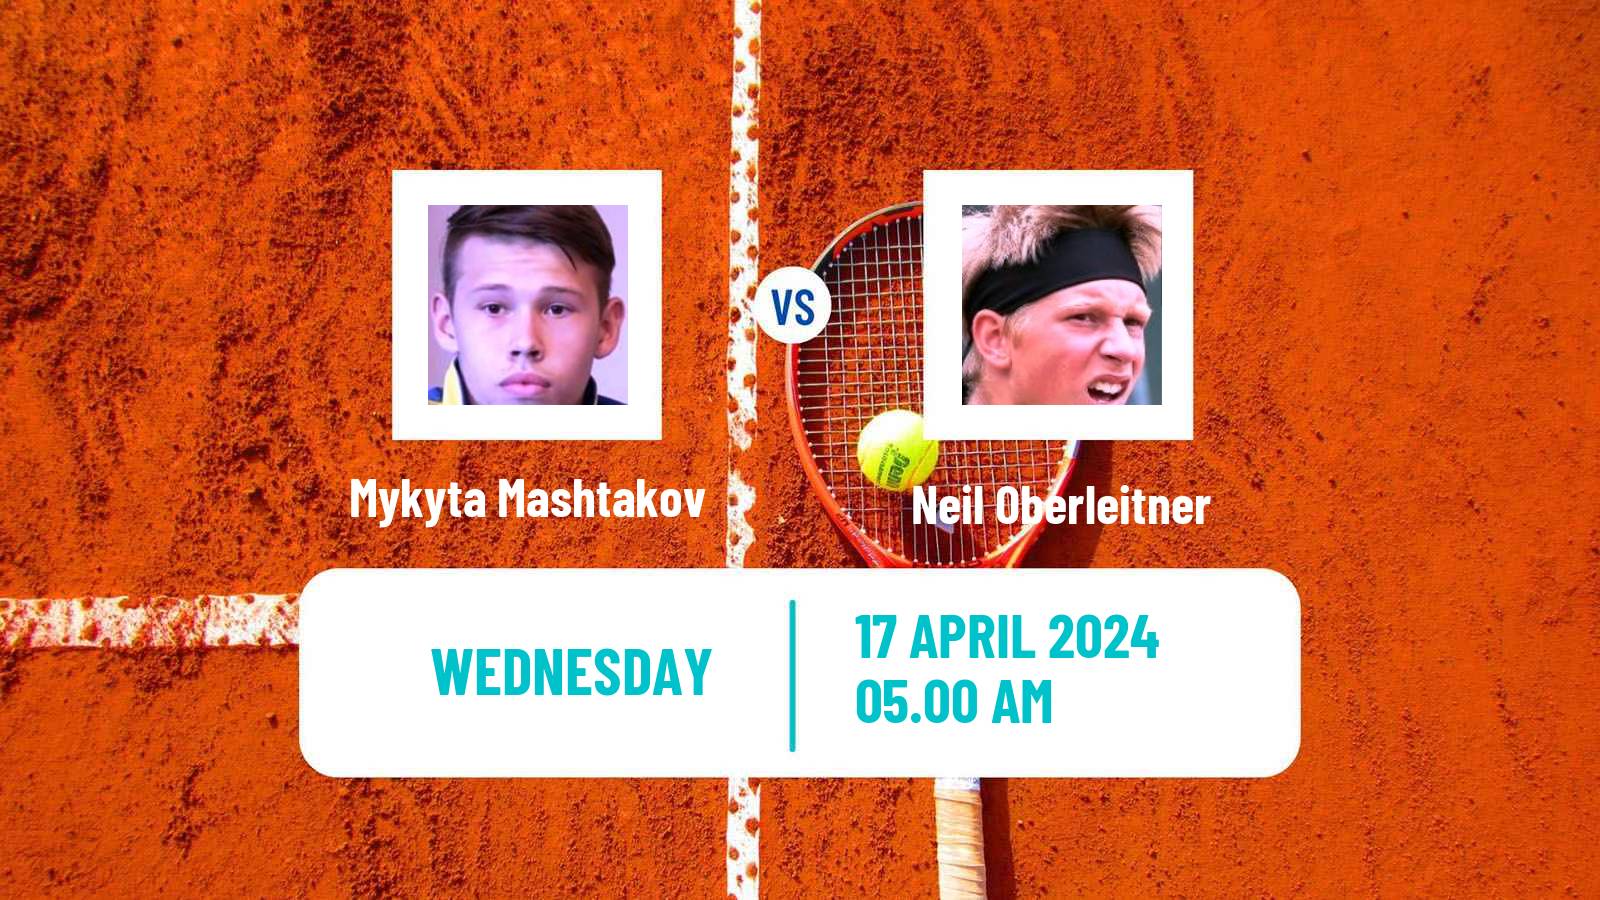 Tennis ITF M15 Dubrovnik Men Mykyta Mashtakov - Neil Oberleitner